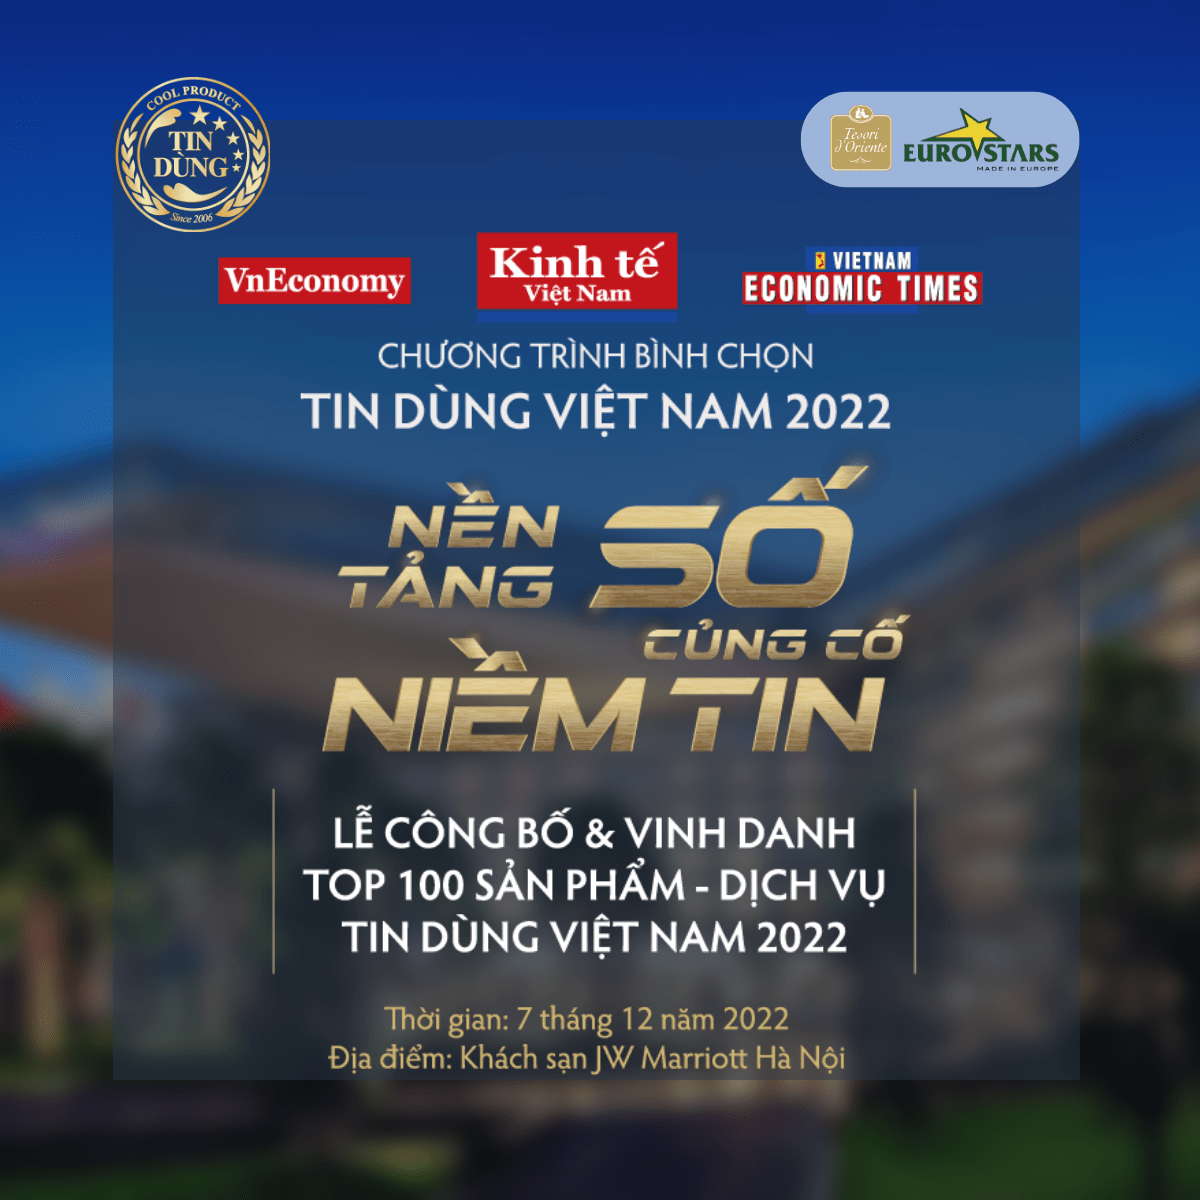 ️TESORI D’ORIENTE ĐƯỢC ĐỀ CỬ VINH DANH TOP 100 SẢN PHẨM – DỊCH VỤ TIN DÙNG VIỆT NAM 2022 ️